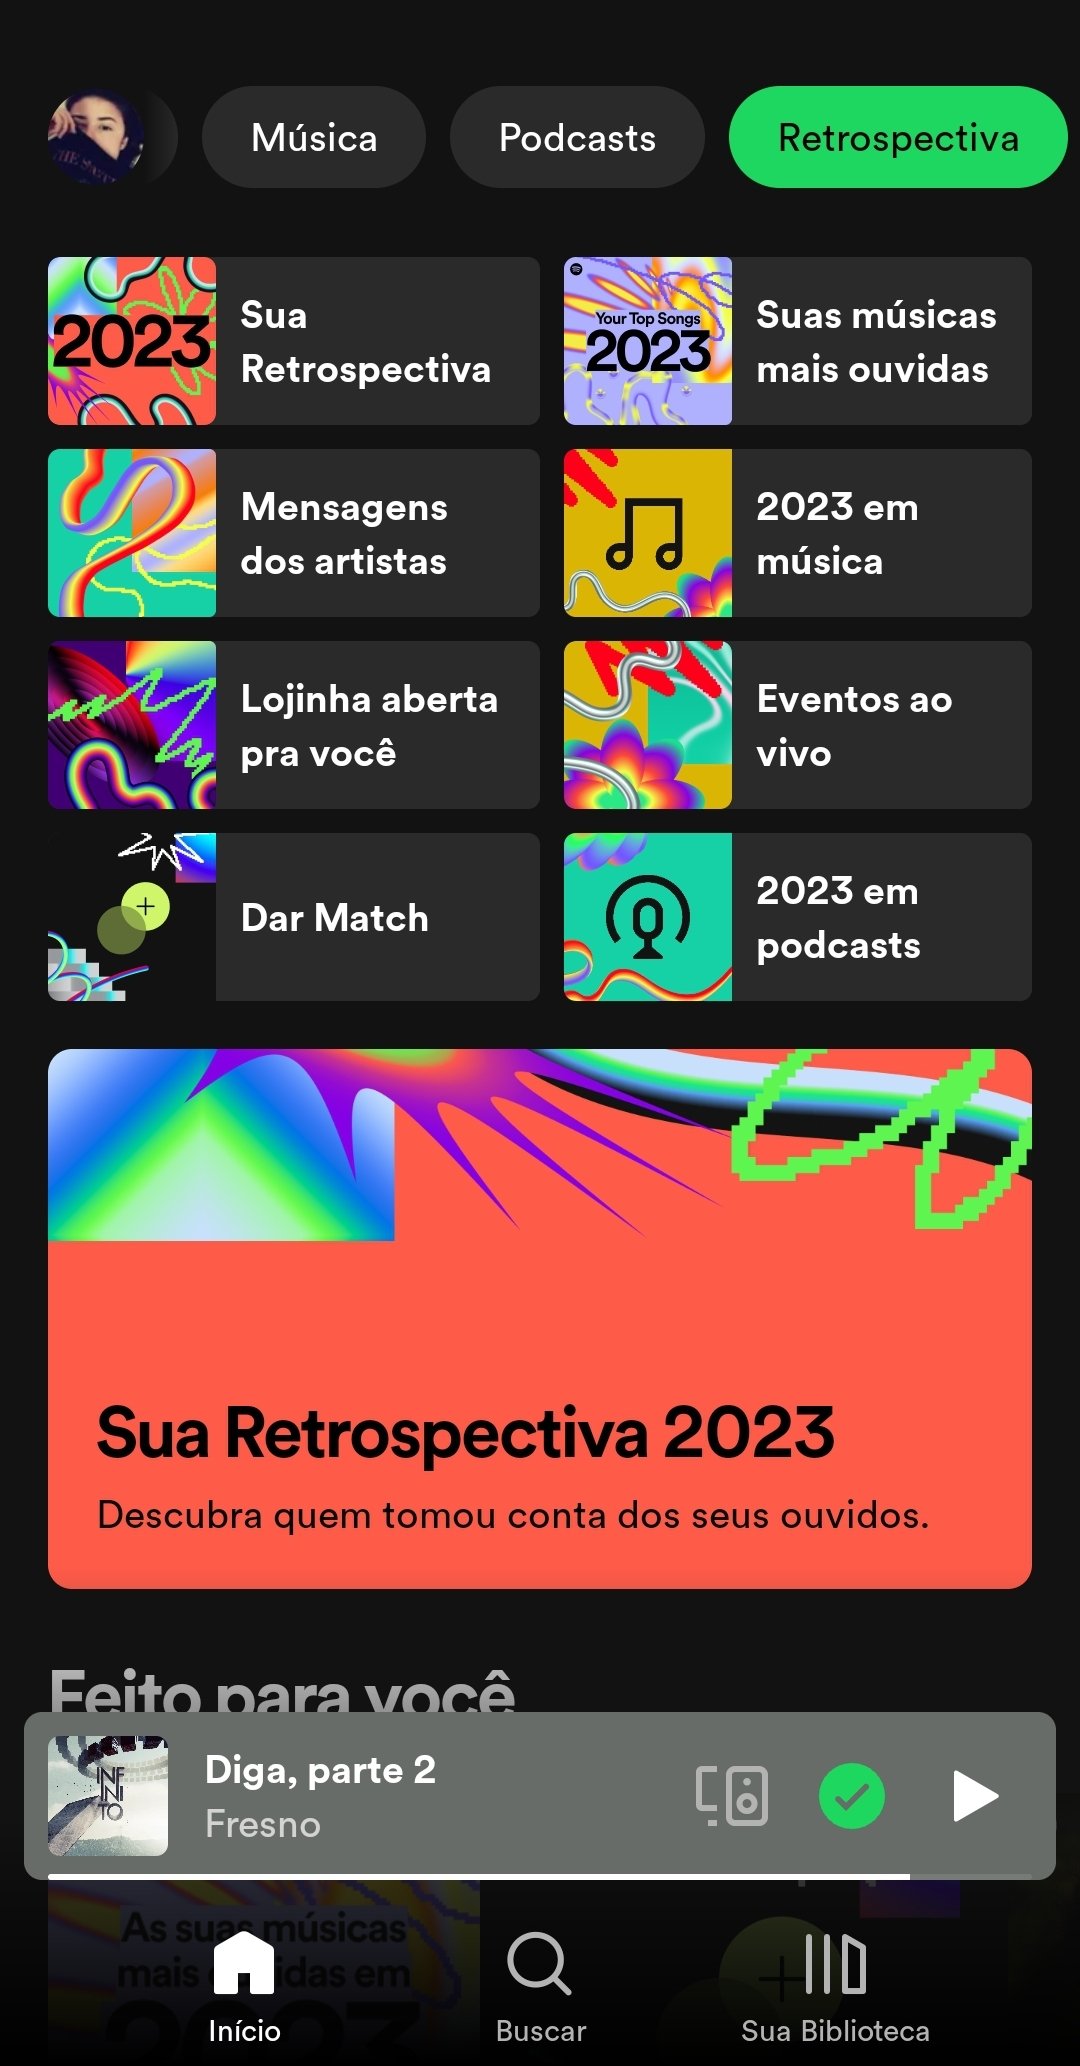 Retrospectiva Spotify 2022: saiba como fazer a sua